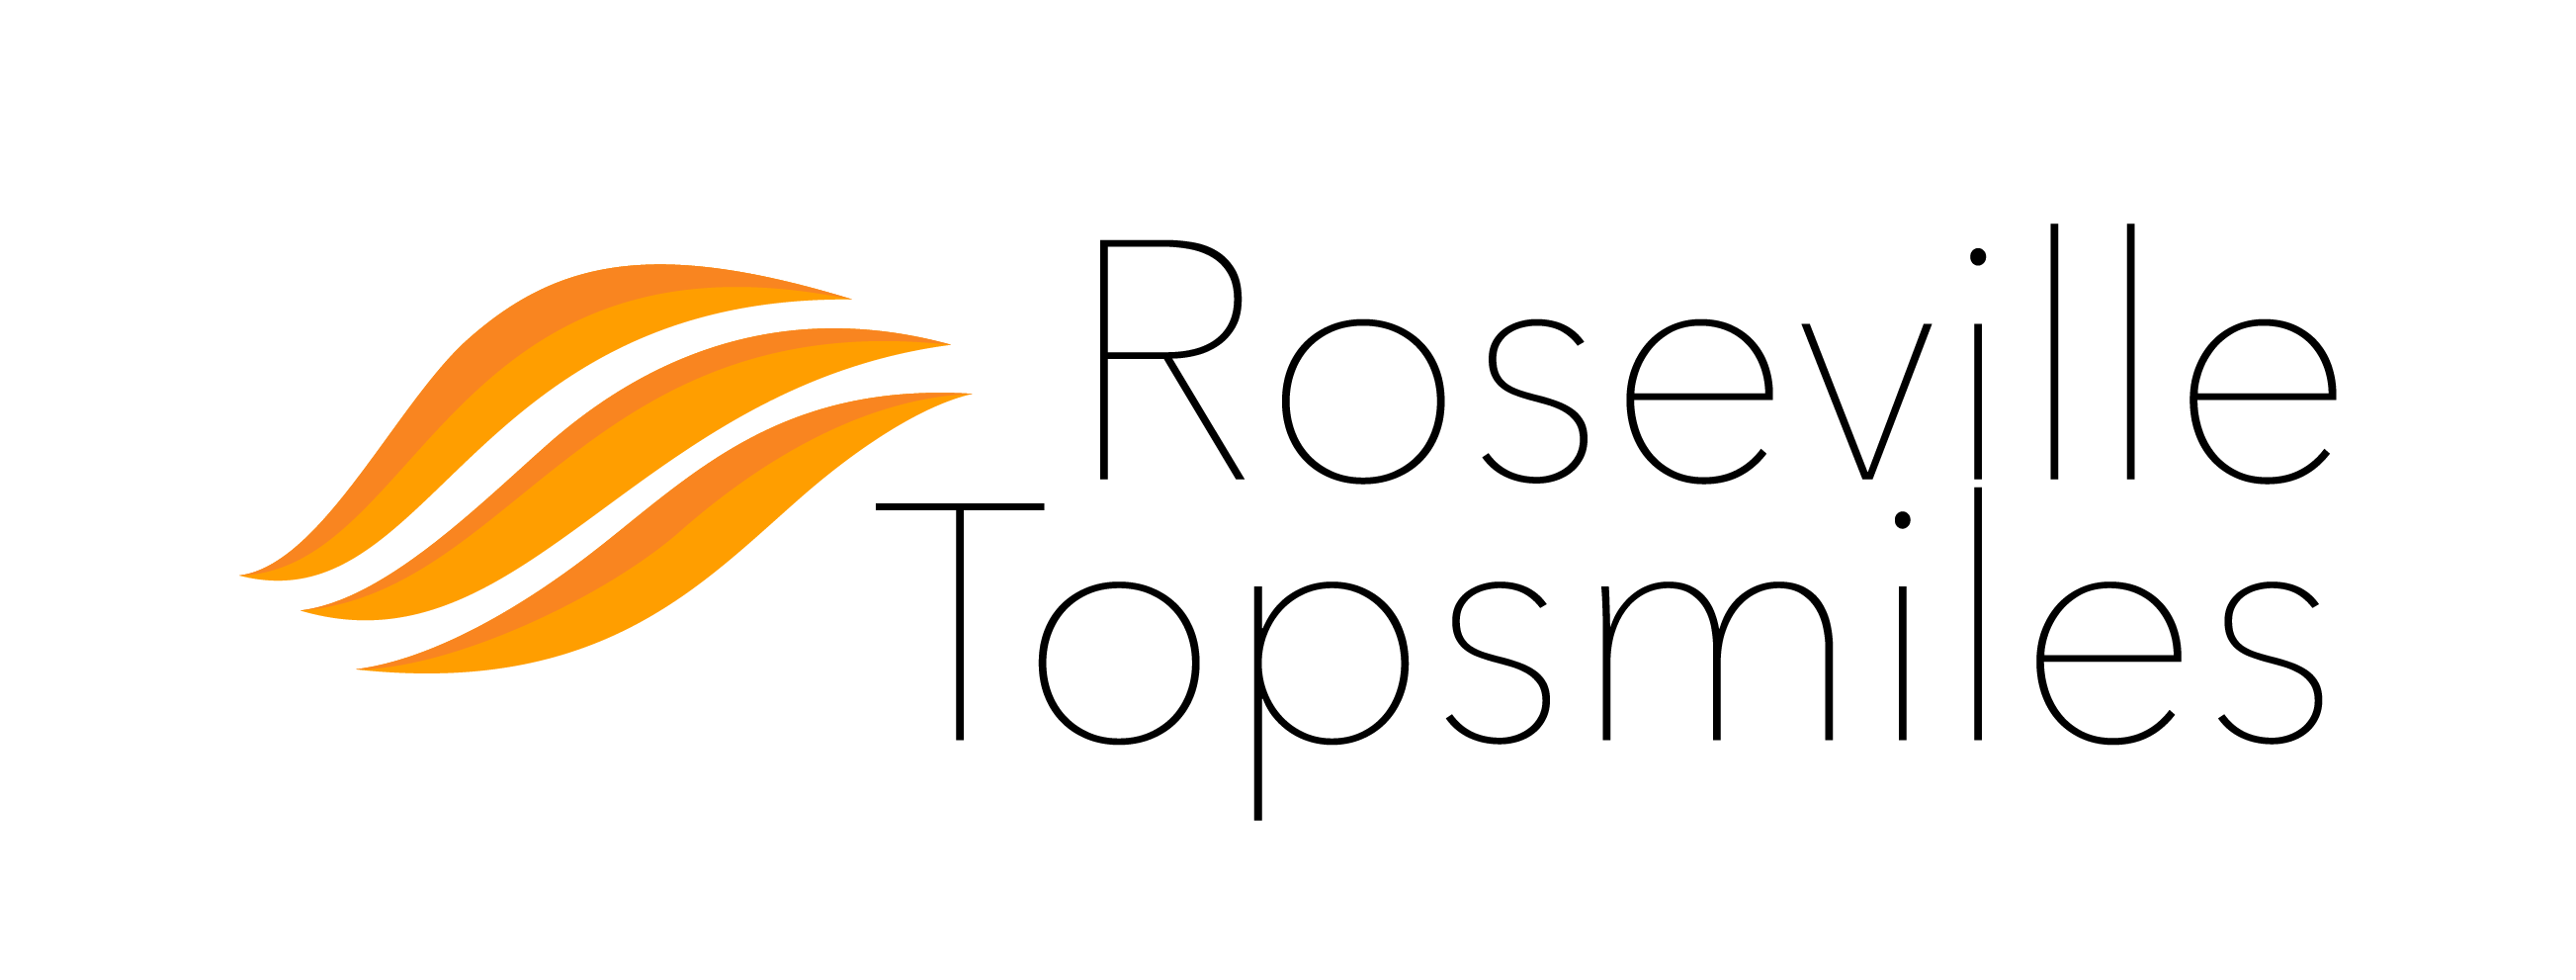 Roseville Topsmiles